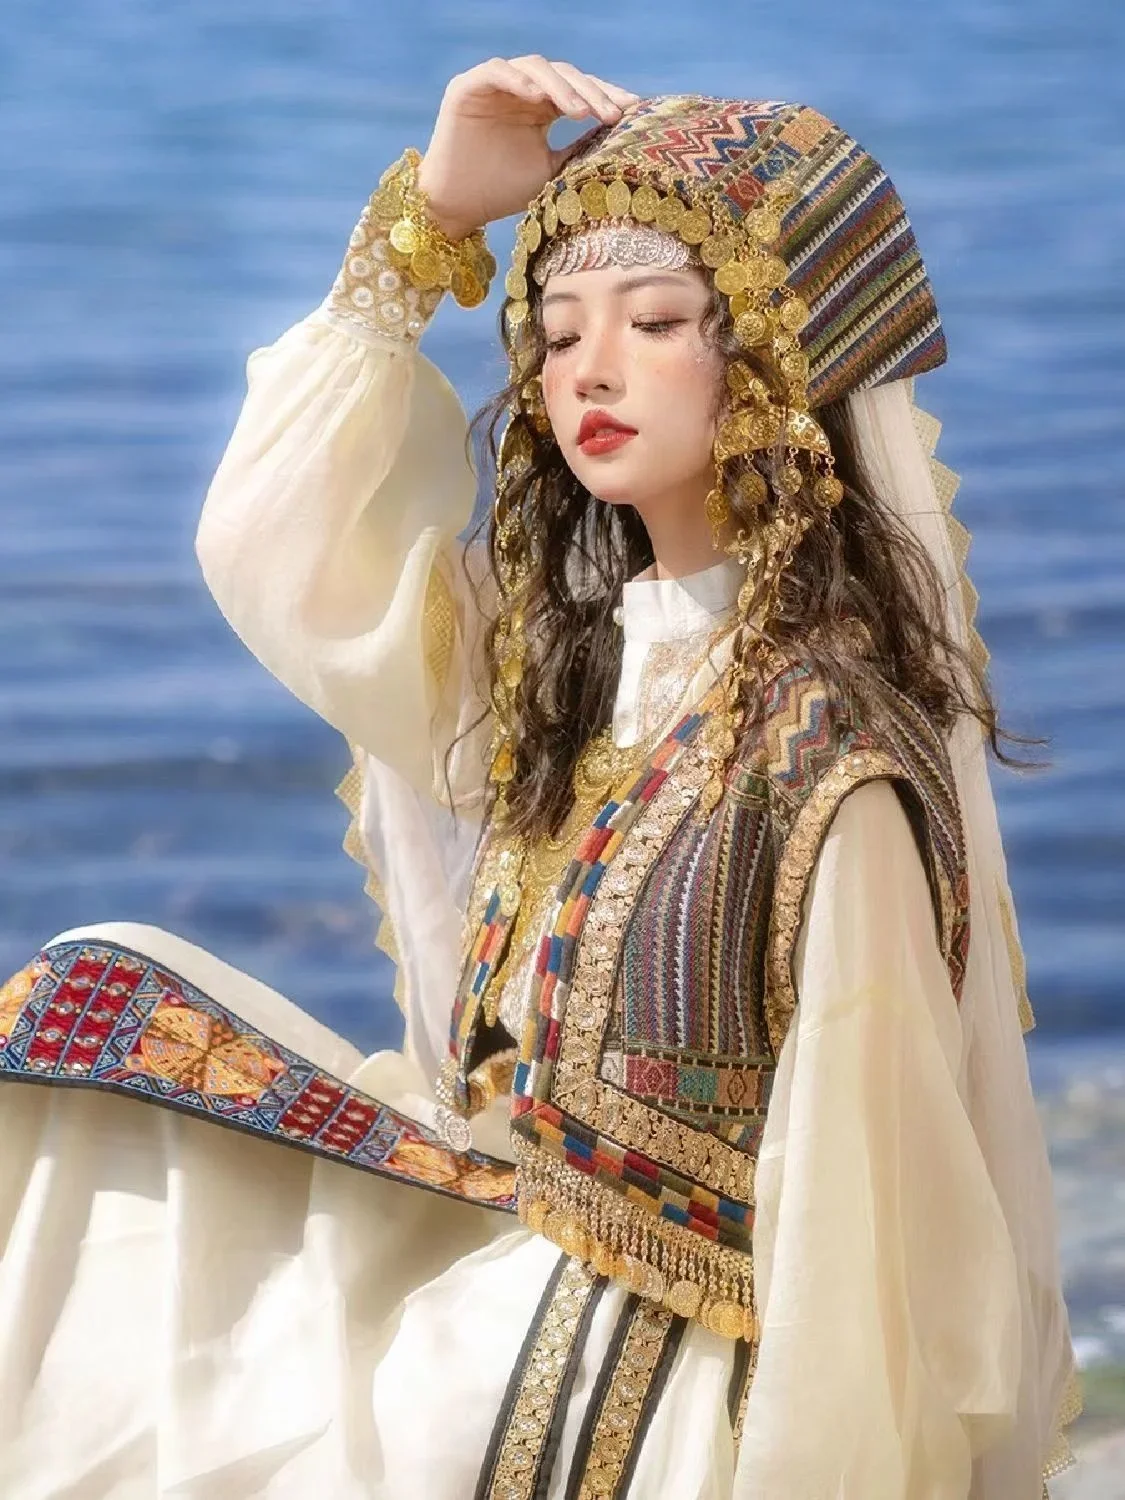 

Одежда для древней принцессы женский золотой головной убор вышивка танцевальное платье западные регионы этнический китайский стиль дворцовый костюм